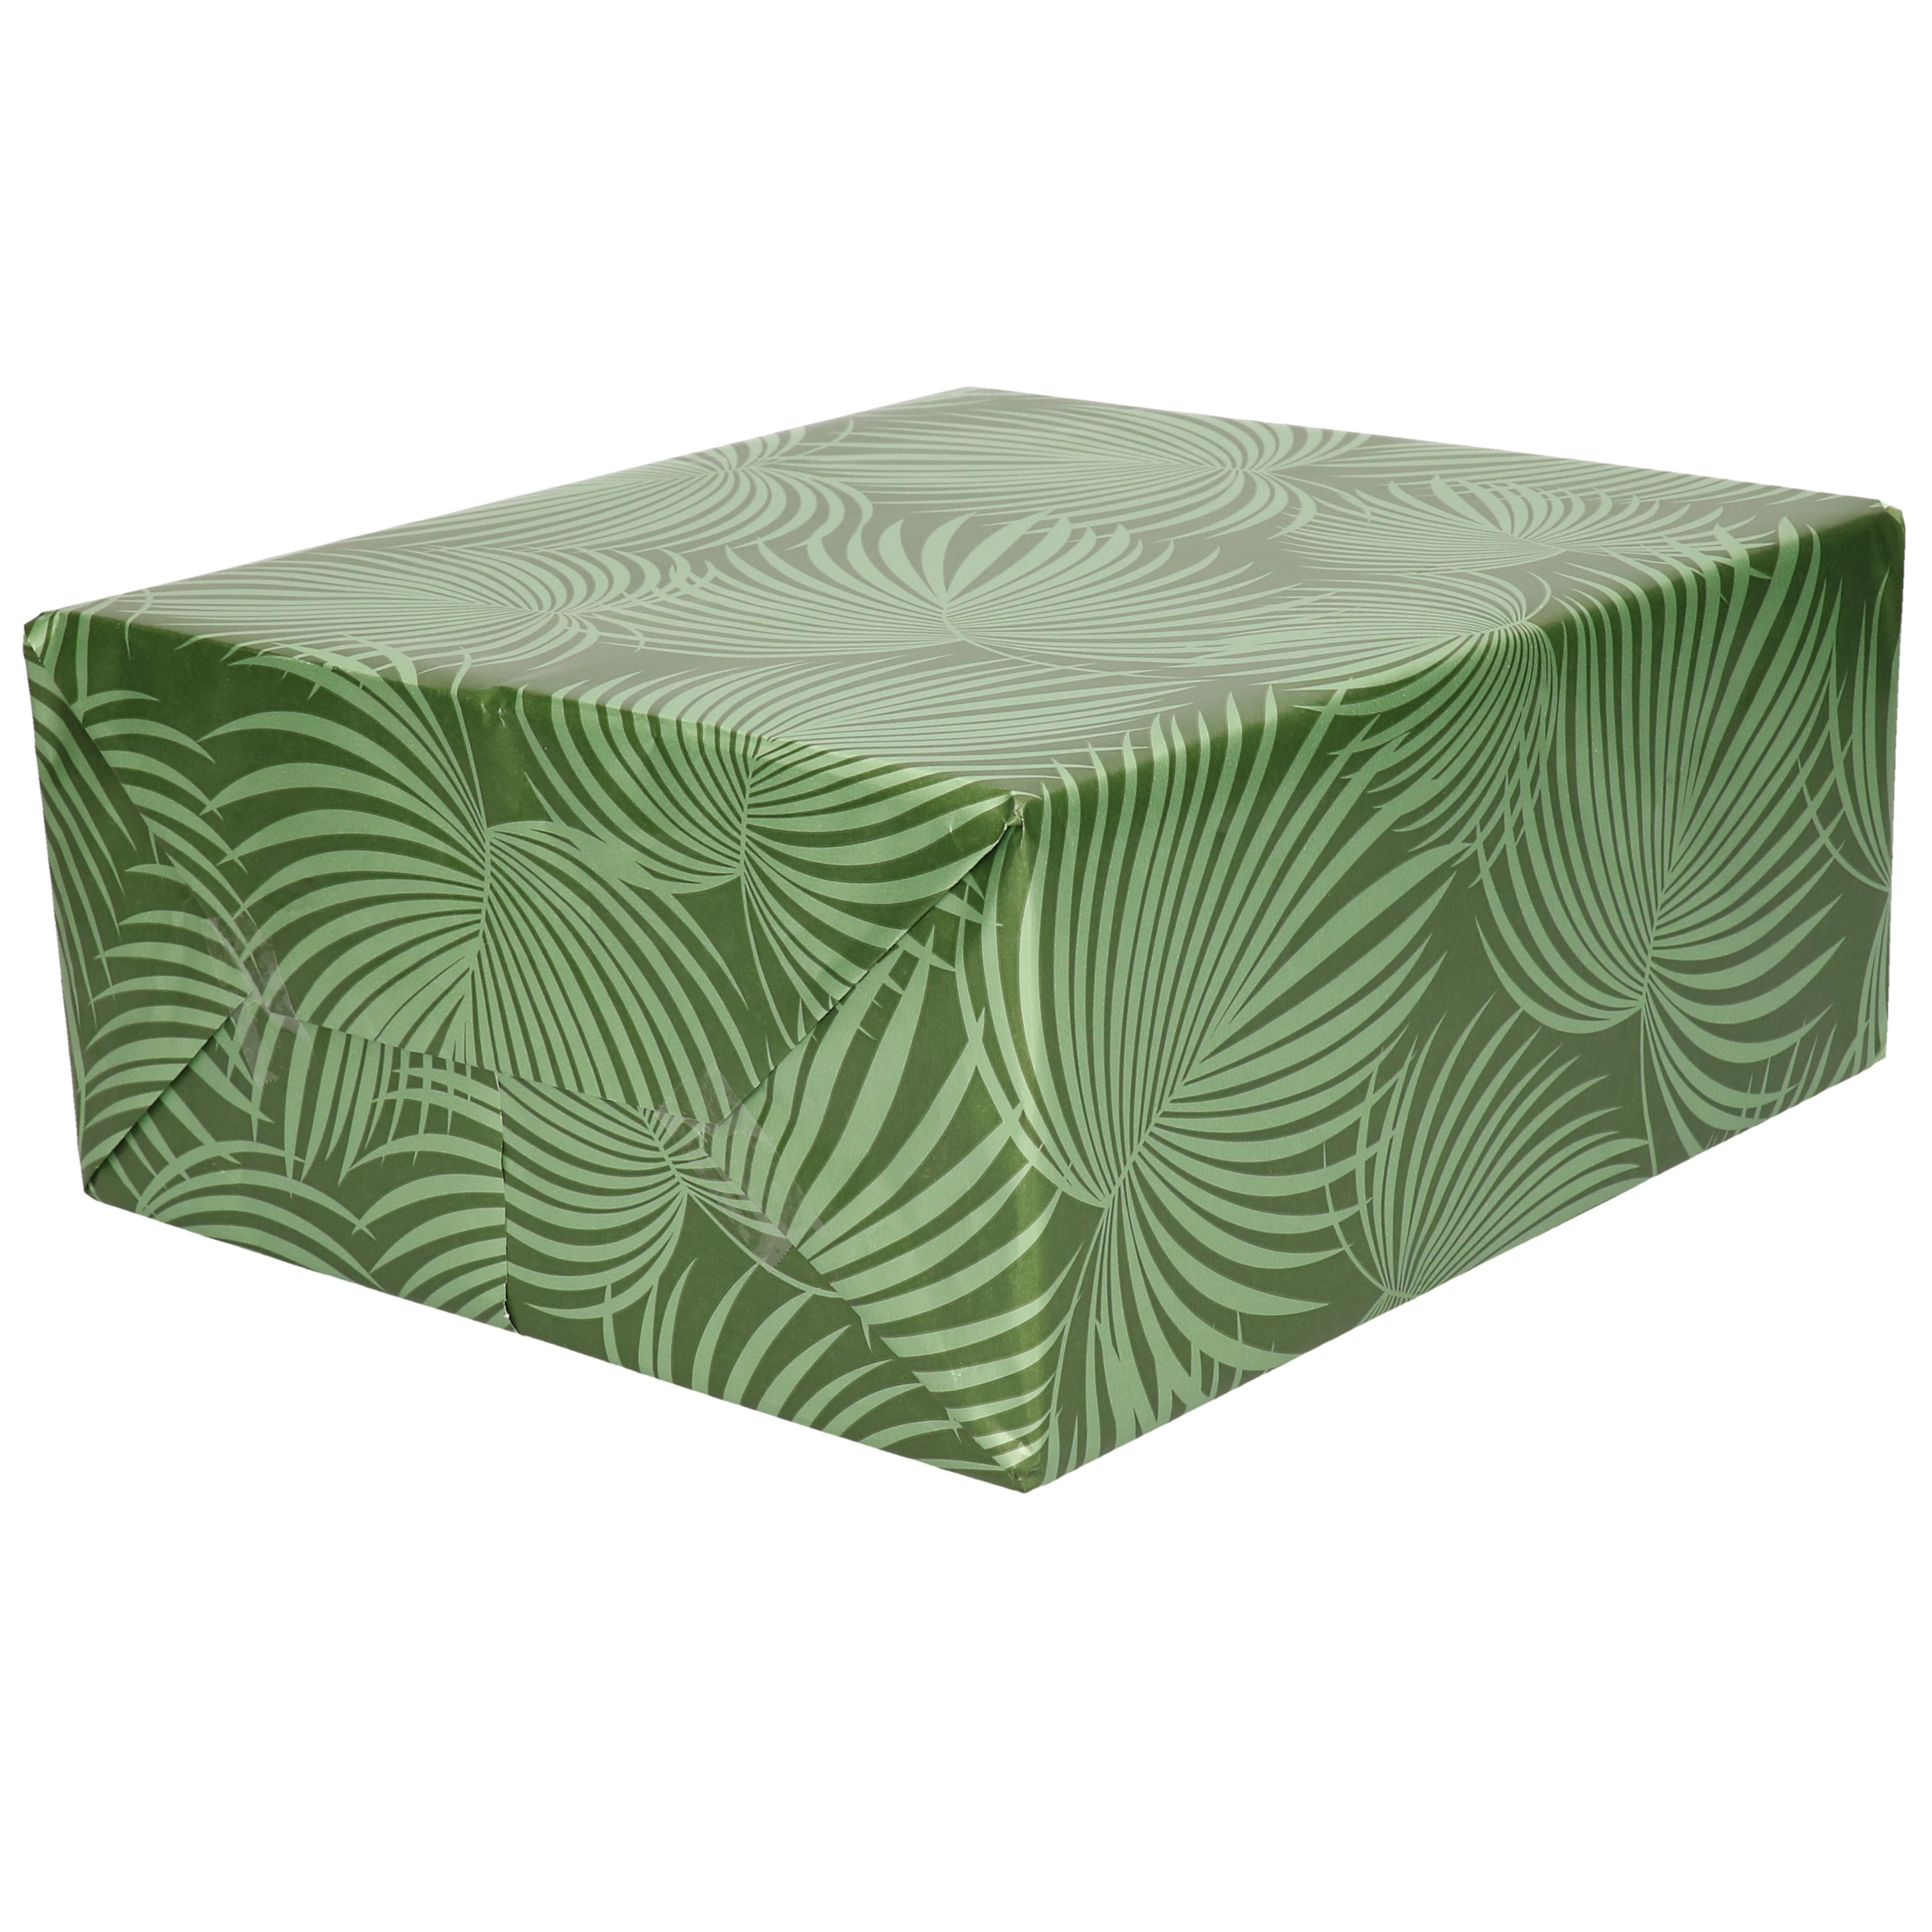 1x Rollen folie inpakpapier/cadeaupapier metallic groen/zilver met bladeren 70 x 200 cm